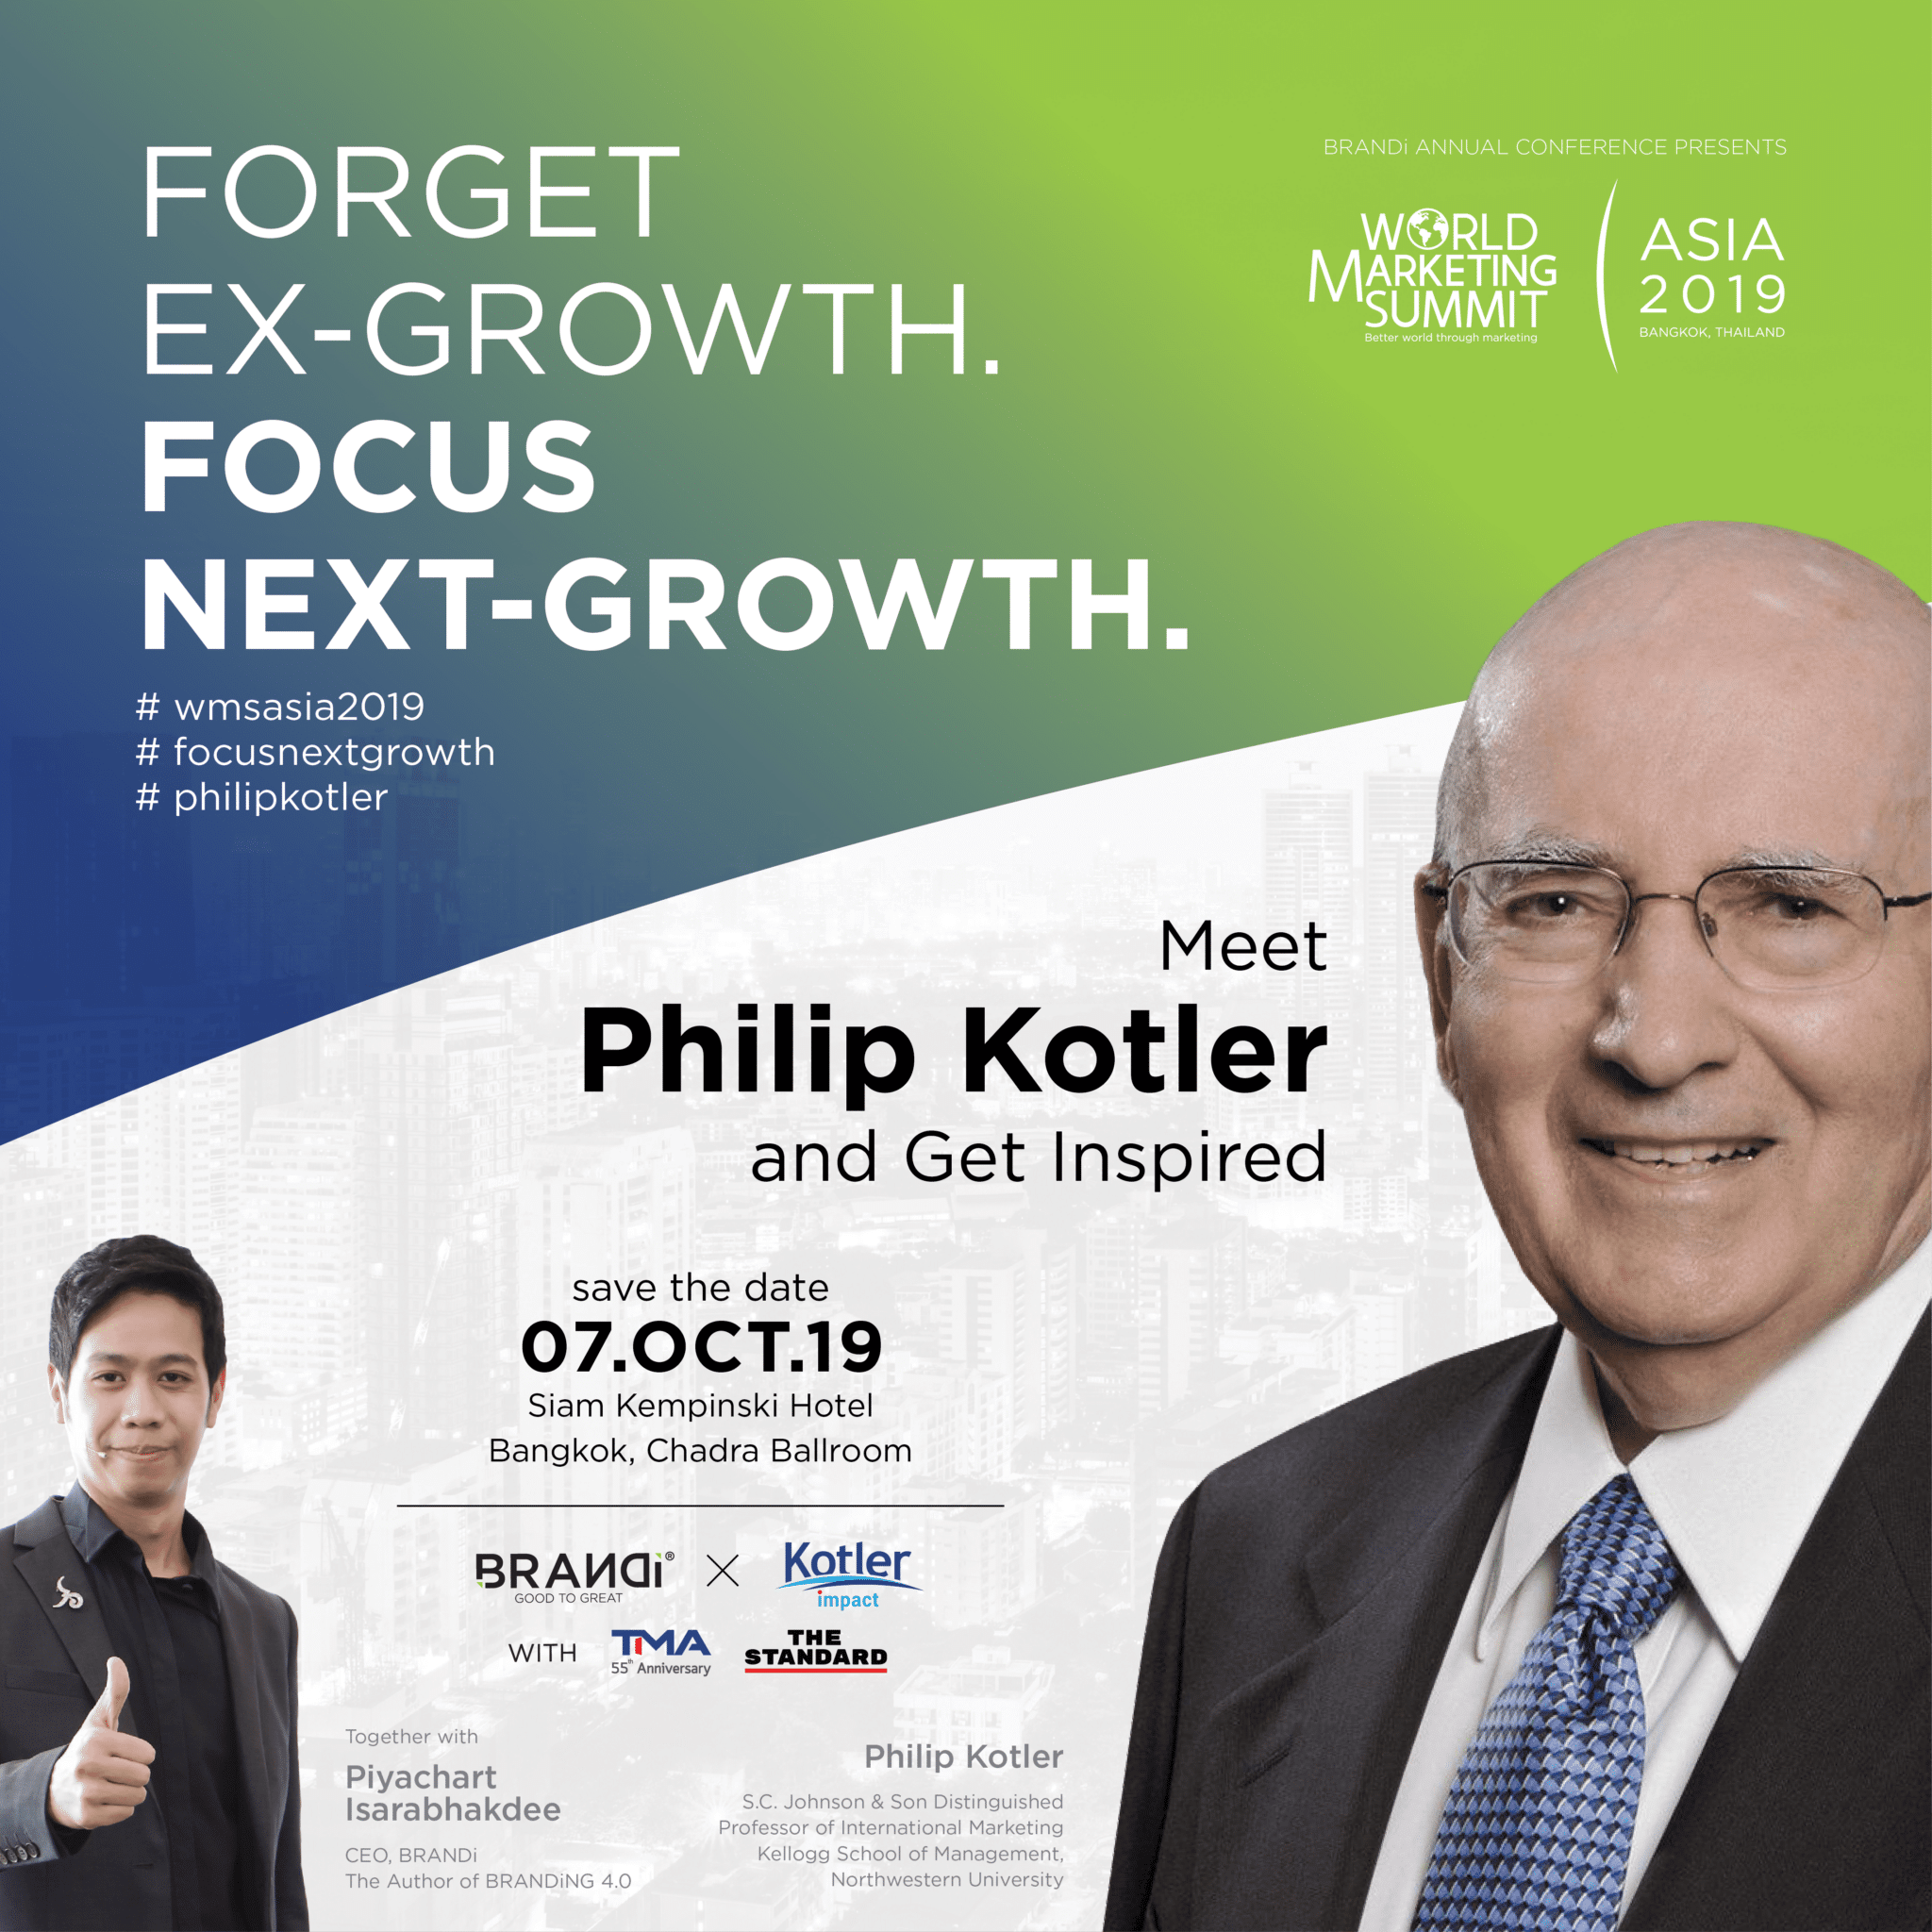 World Marketing Summit Asia 2019 meet Philip Kotler